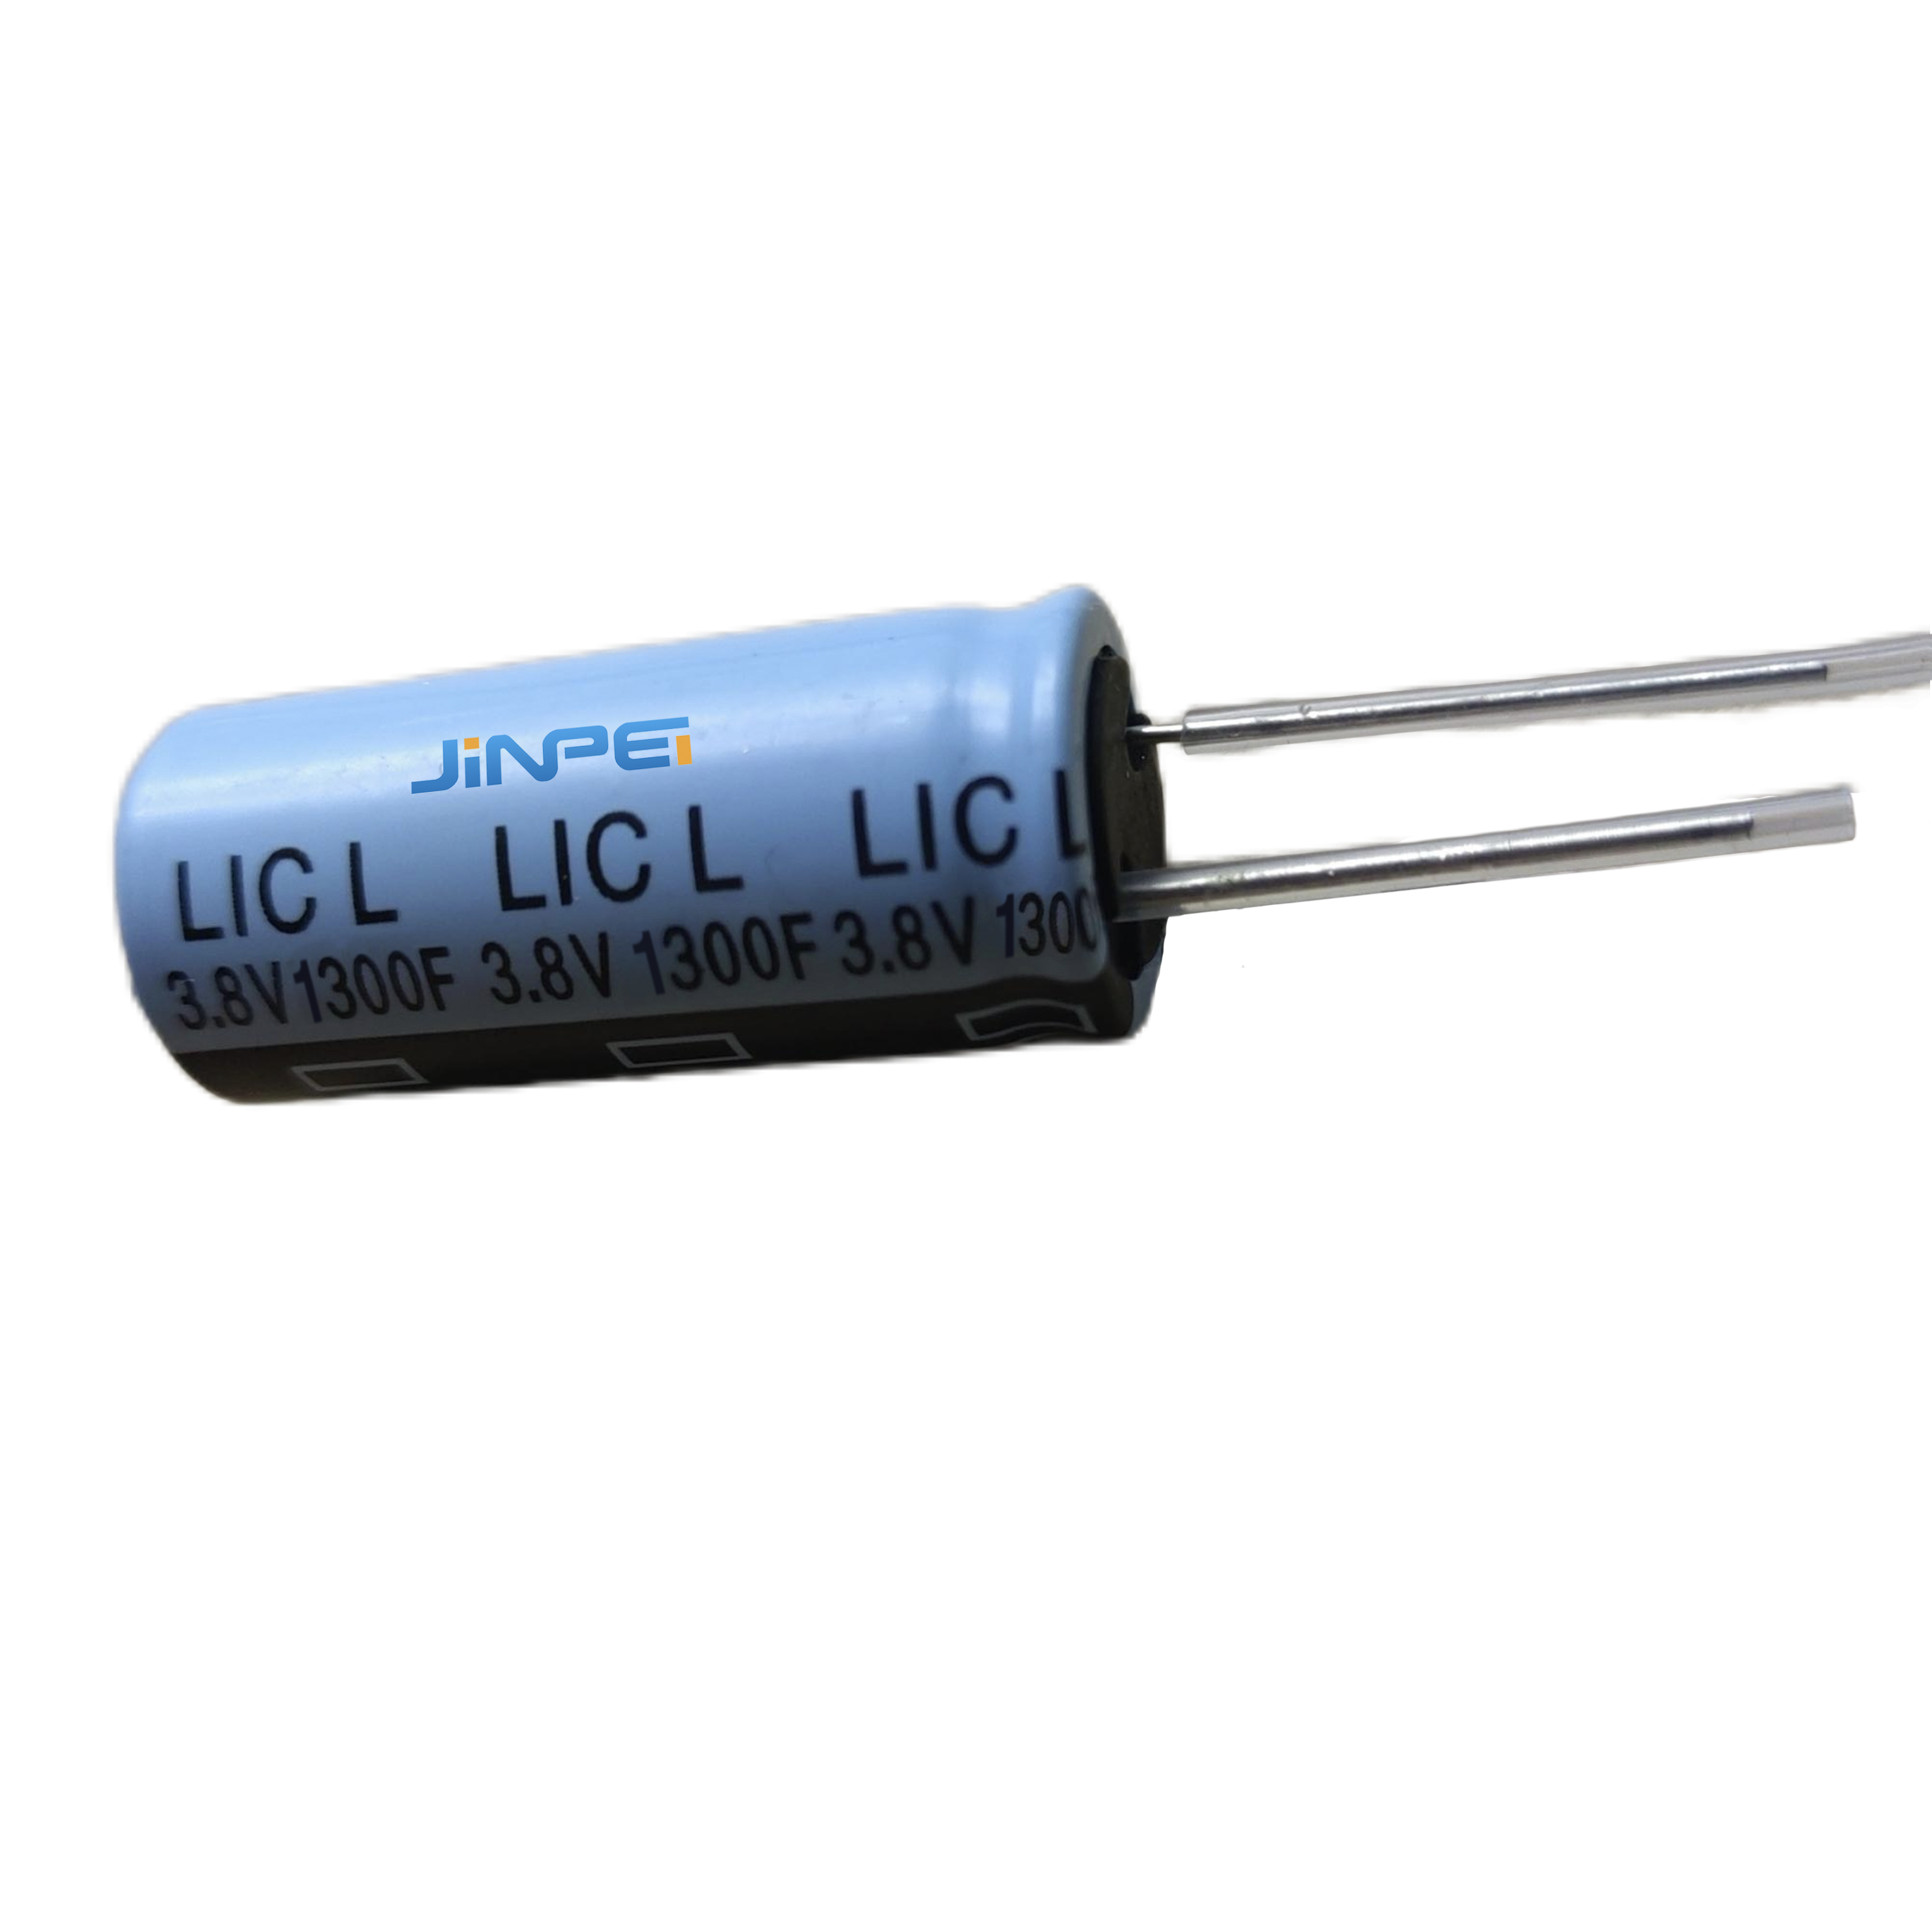 Radijalni olovni litijum jonski kondenzator LIC 1300F